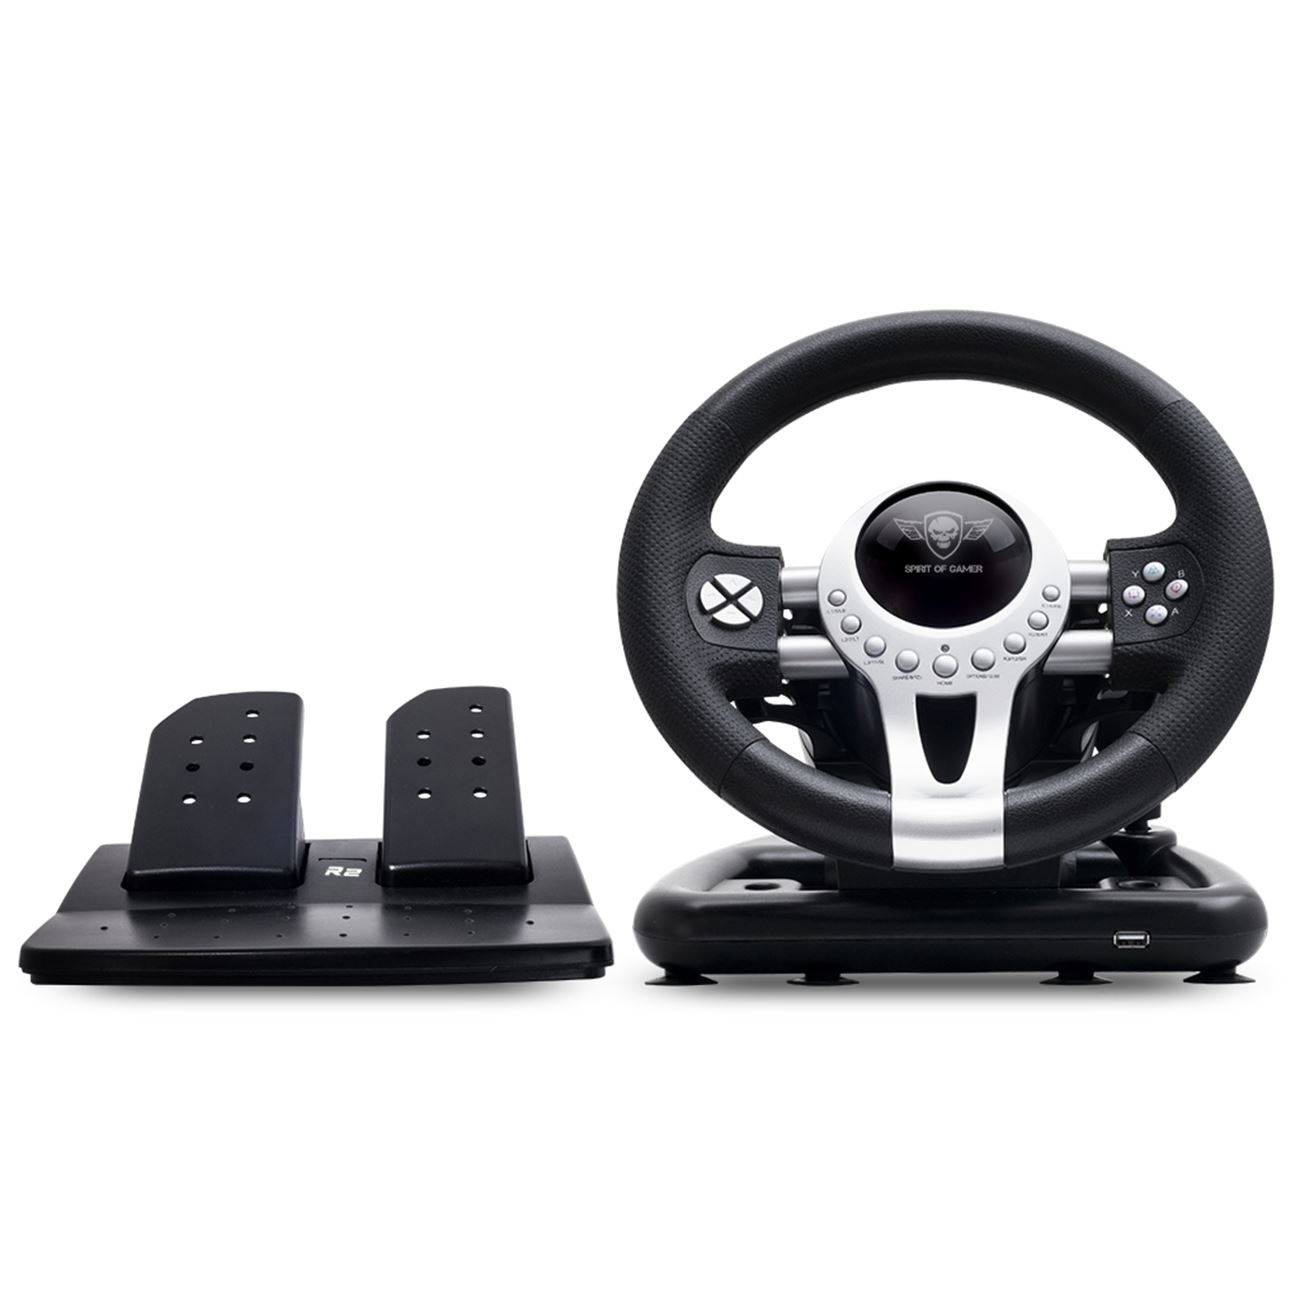 Игра racing wheel. Pro Racing Wheel. Spirit of Gamer Race Wheel Pro. Microcon 2 Racing Wheel and Pedals отзывы владельцев. Картинг Gamer на все устройства.